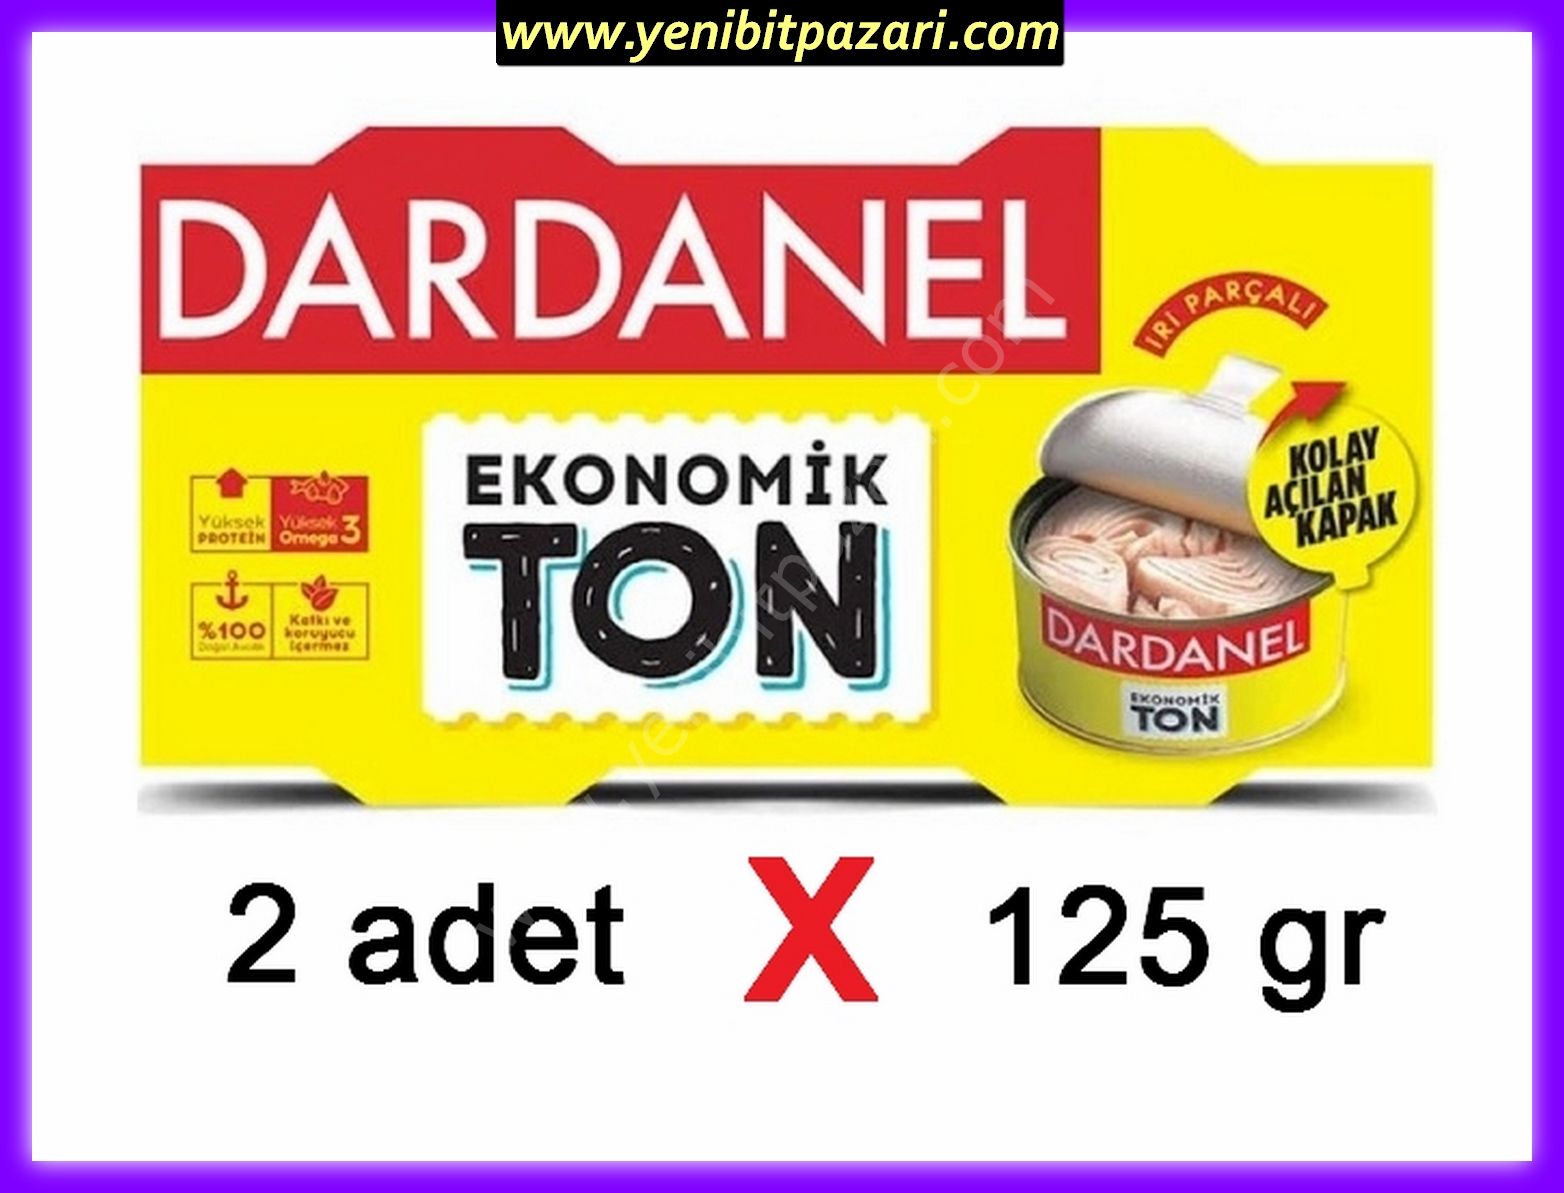 Dardanel Ton 2X125 Gr Ekonomik ton balığı konserve TETT 12,12,2026 ( sadece 1 adet alabilirsiniz )